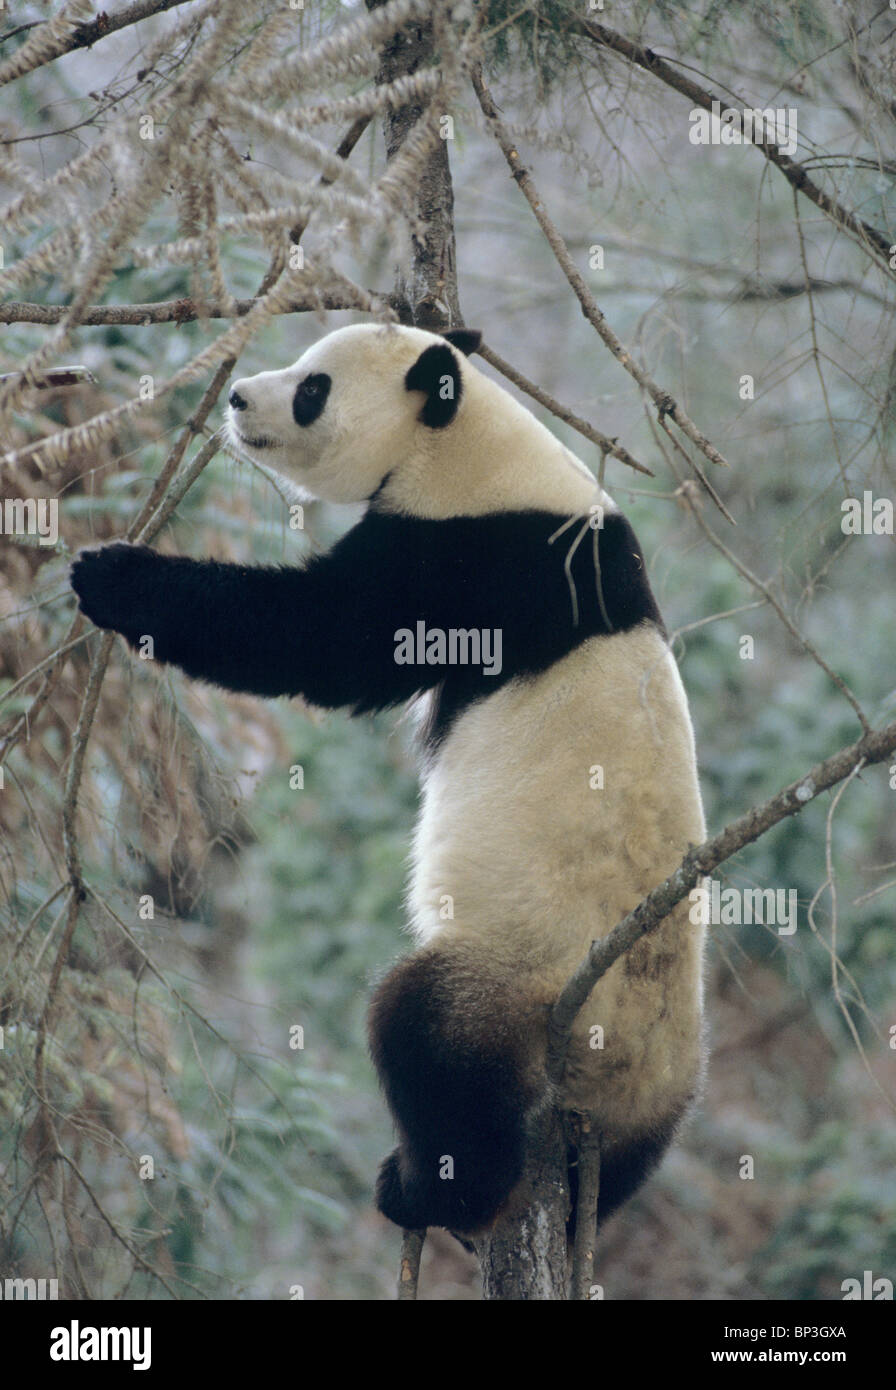 Giant panda climbs tree in winter, Wolong, China, January Stock Photo